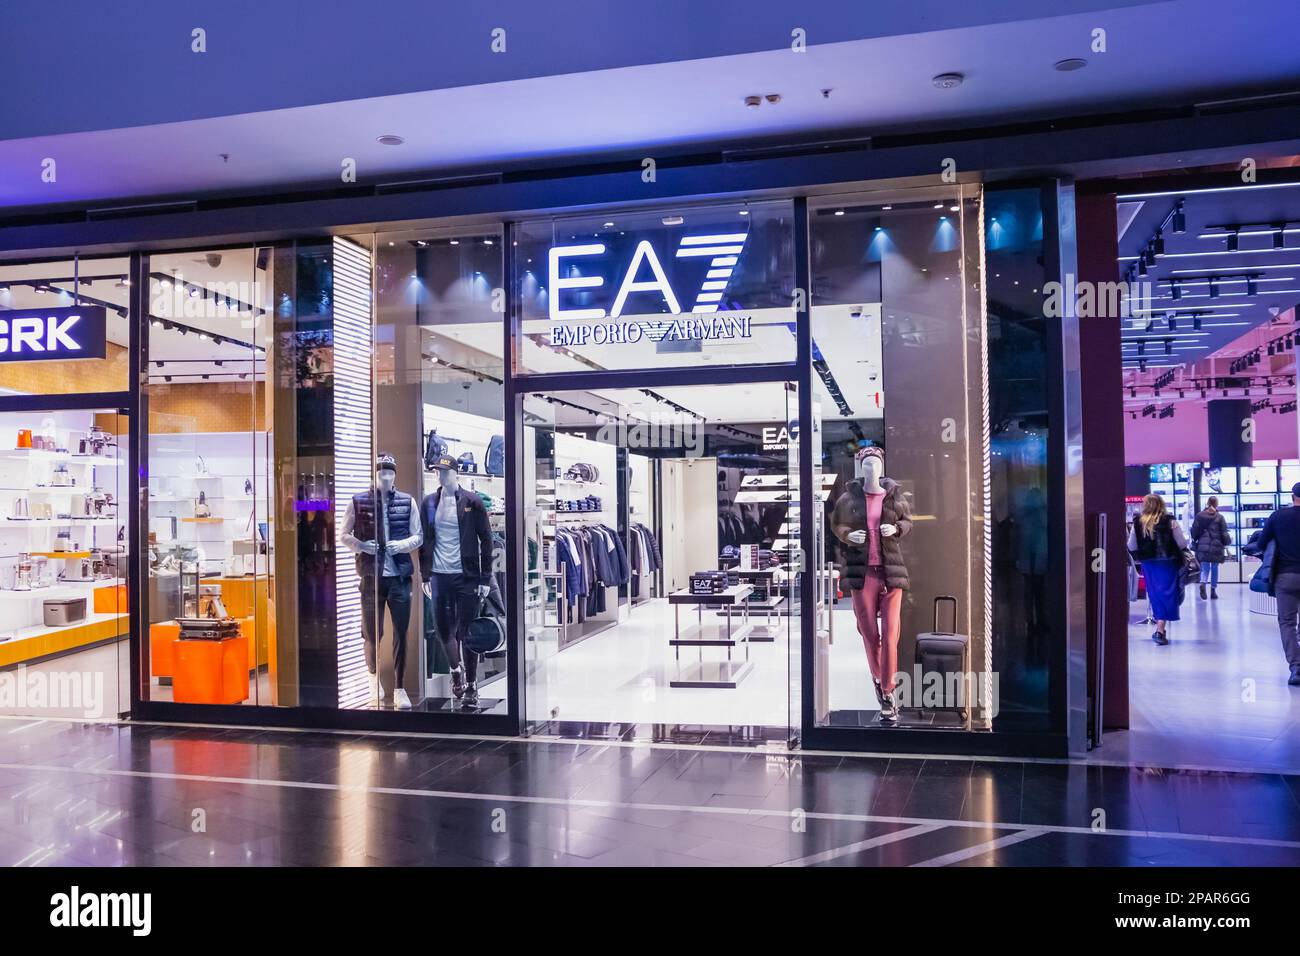 Emporio Armani EA7-Ladenschild im Einkaufszentrum. Glastüren, Boutiquen, Schaufenster, Schaufensterpuppen. Astana Nur-Sultan, Kasachstan - 10.24.2022. Stockfoto